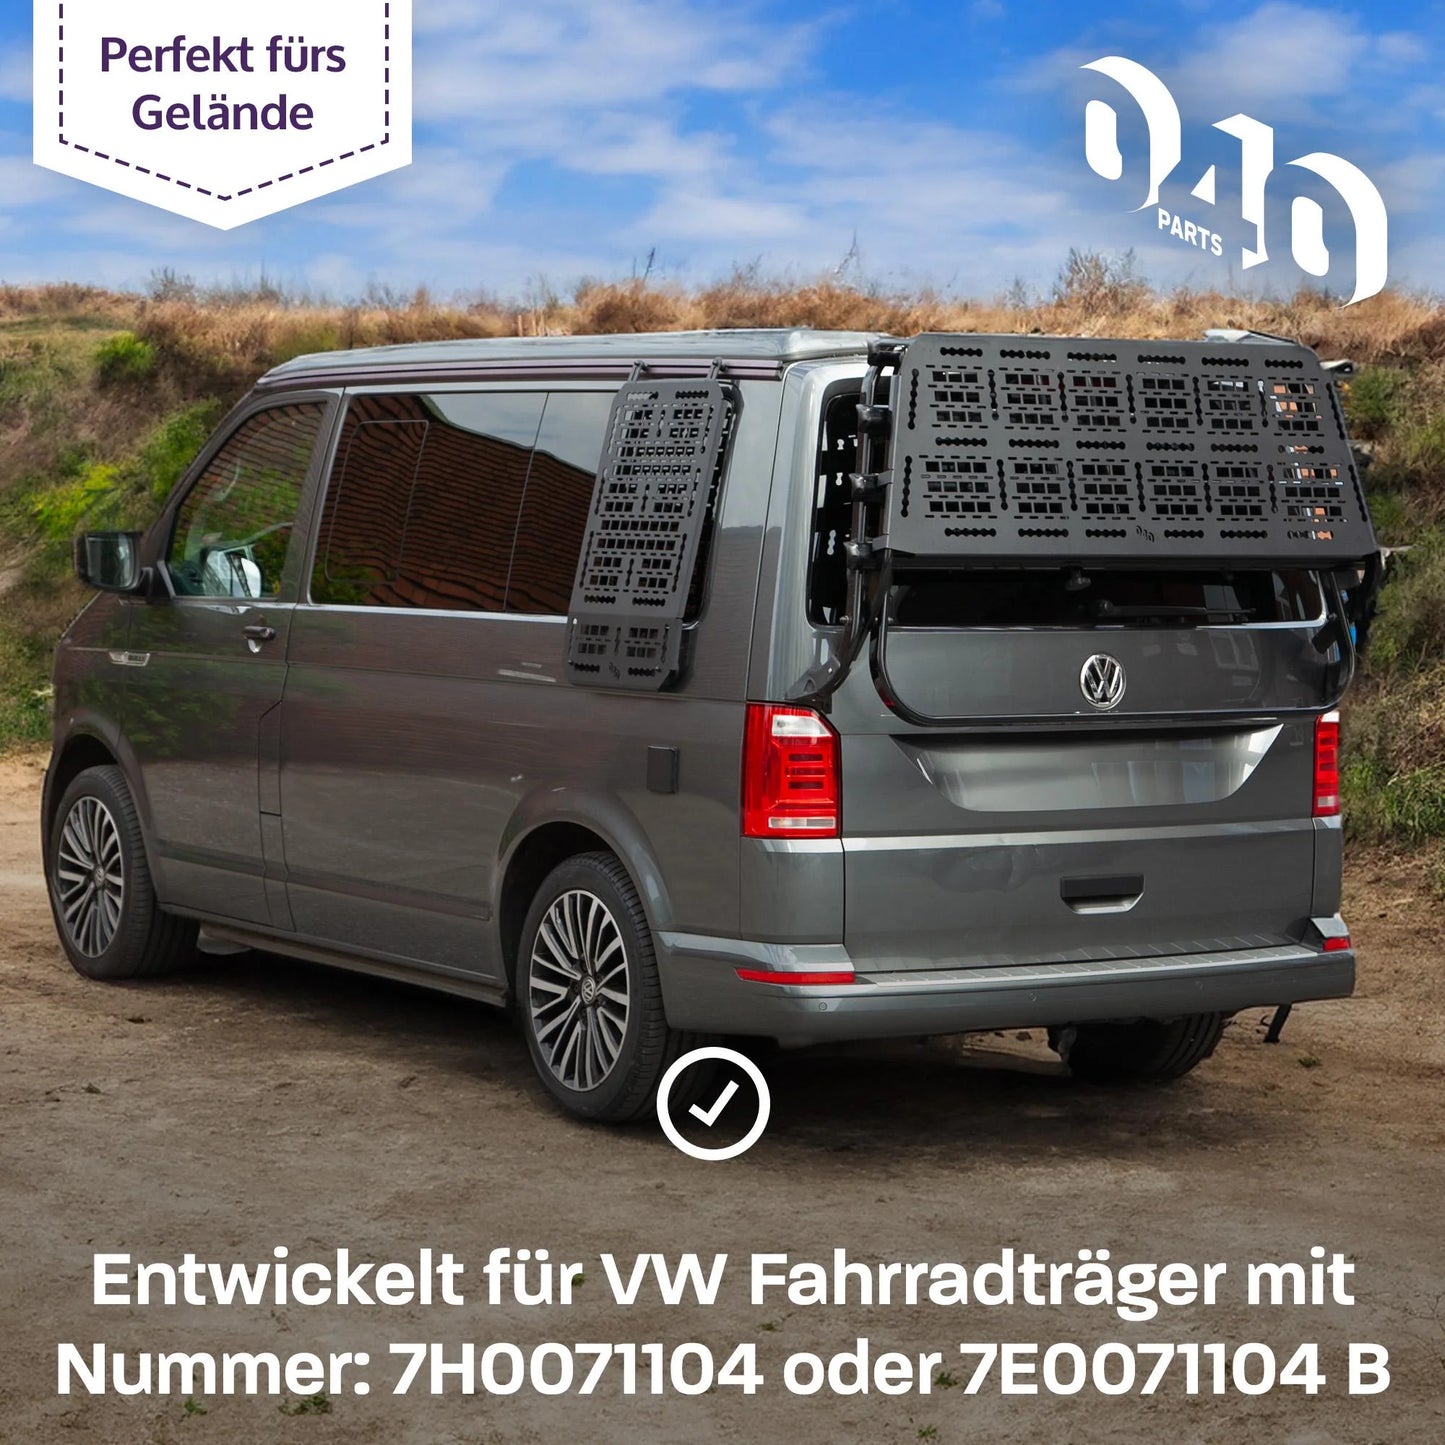 Molle Board für VW T5 T6 T6.1 Fahrradträger Gepäckträger Offroad Zubehör kompatibel mit original Heckträger LOGO